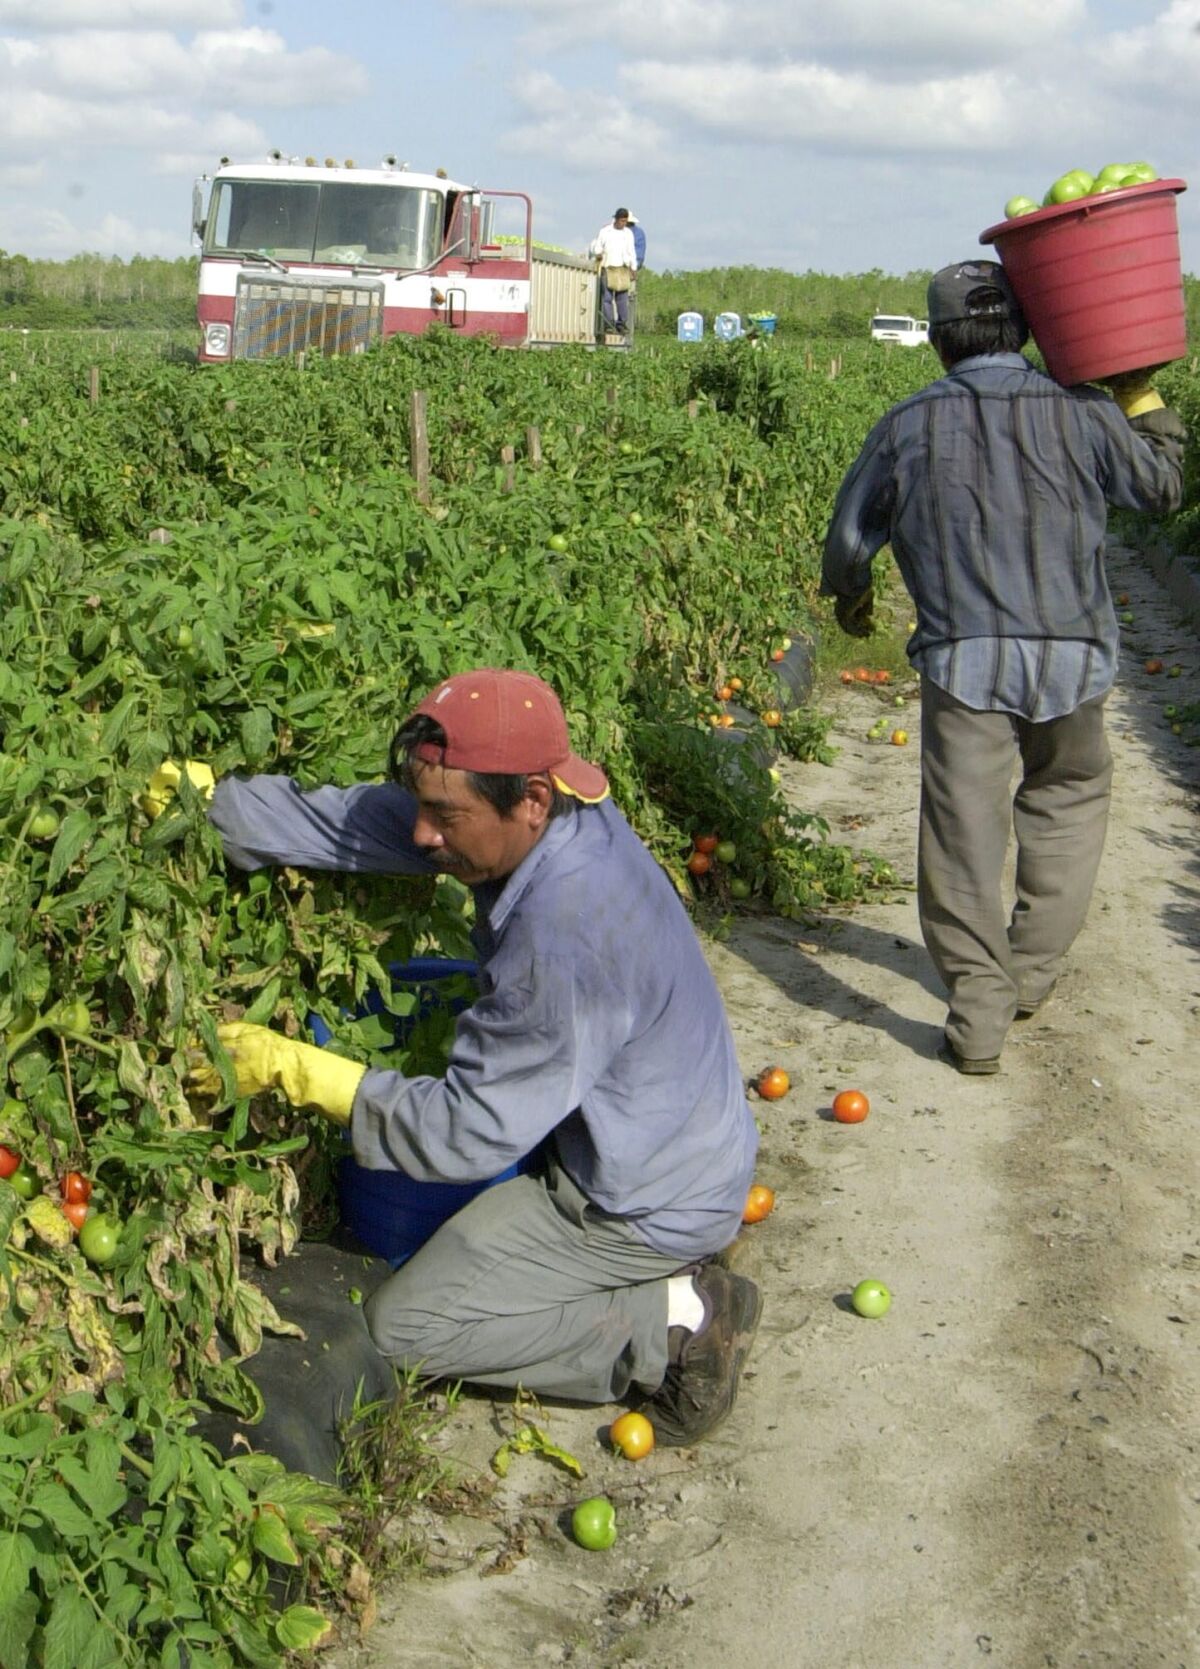 EE.UU. anuncia mejoras a su programa de trabajadores agrícolas extranjeros